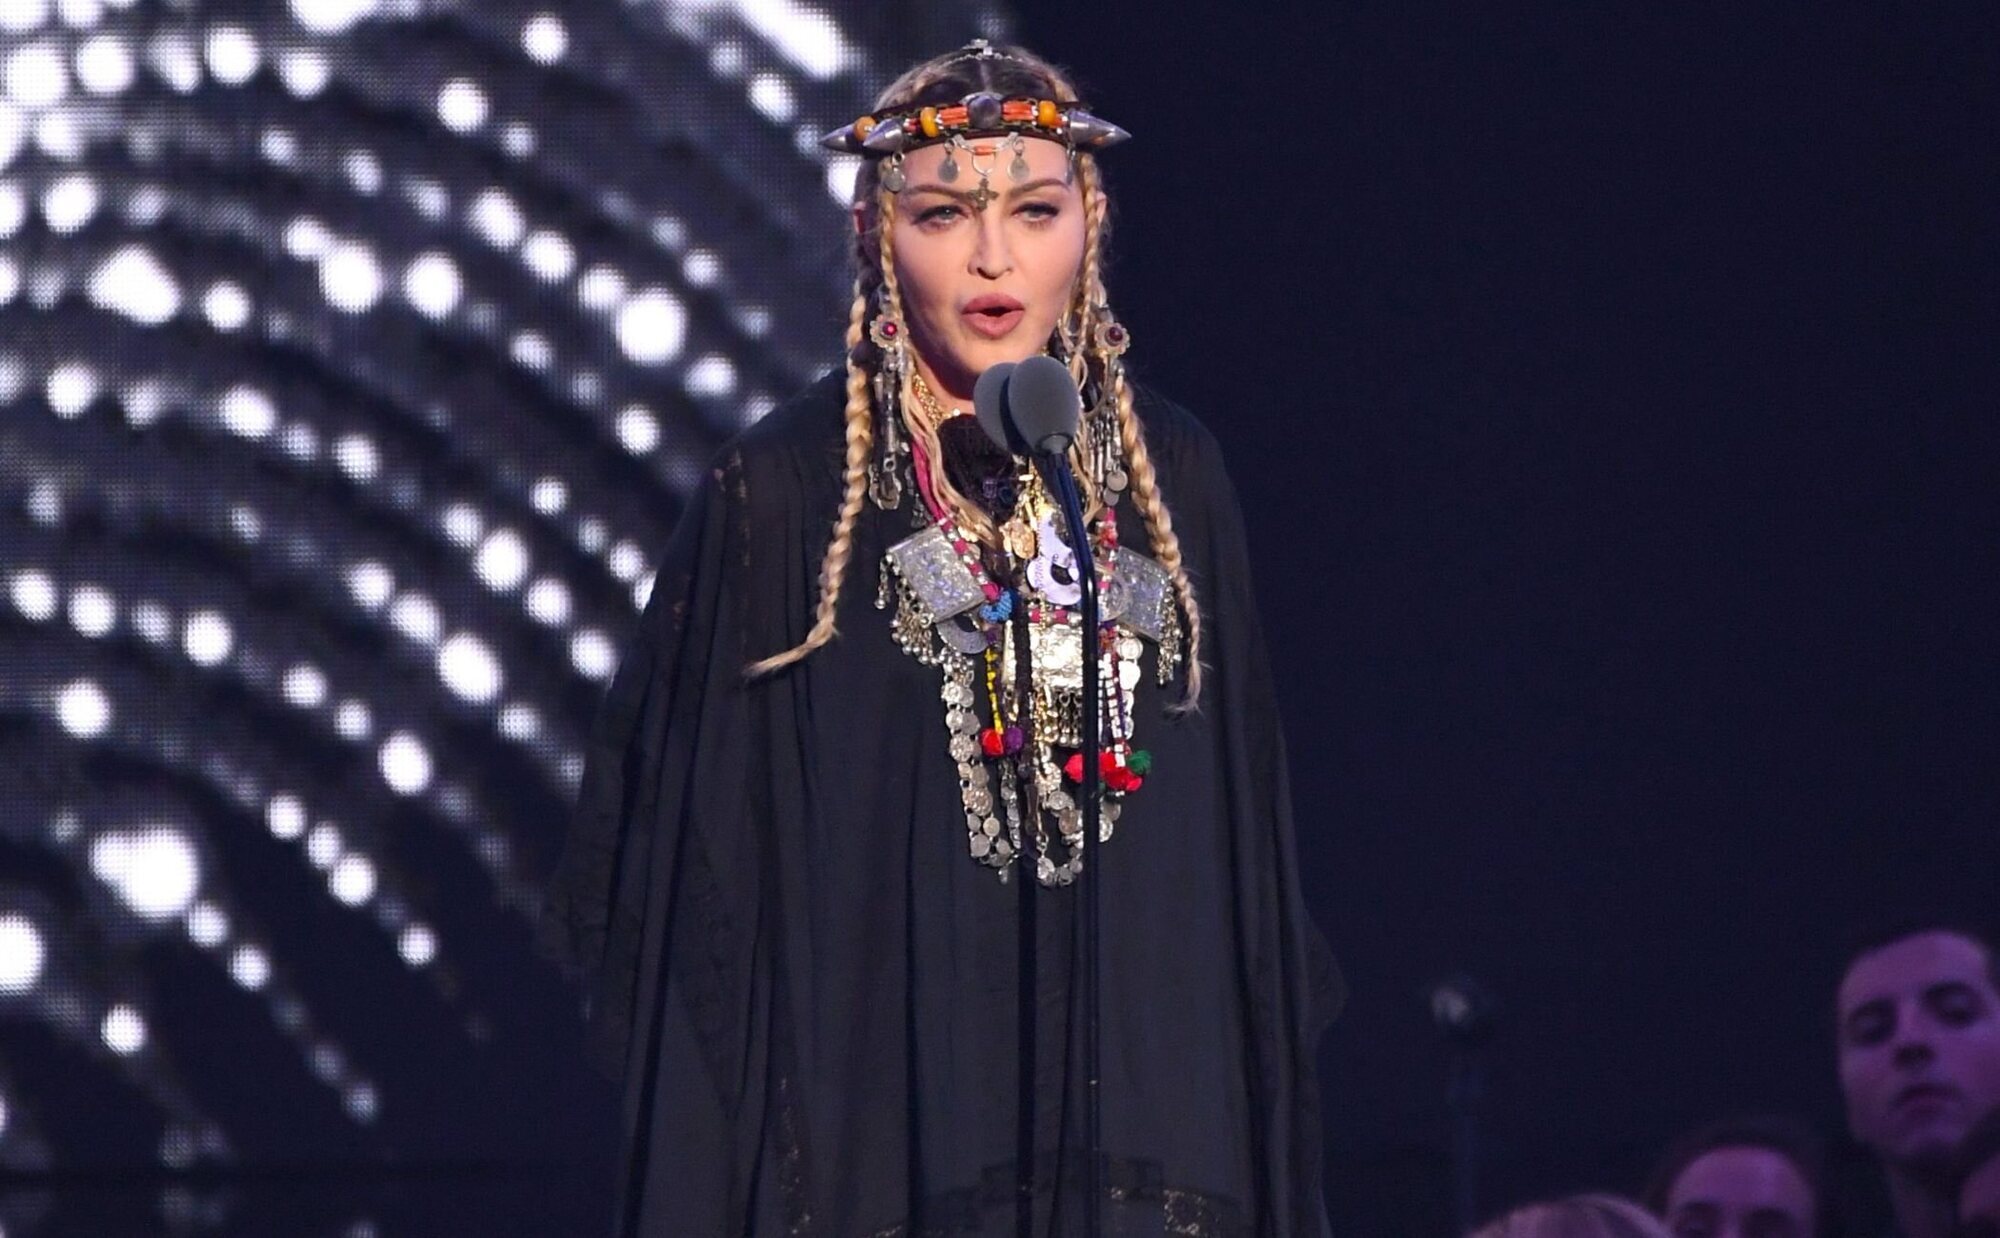 Los motivos que llevaron a Madonna a ignorar los síntomas de la enfermedad por la que ingresó en la UCI